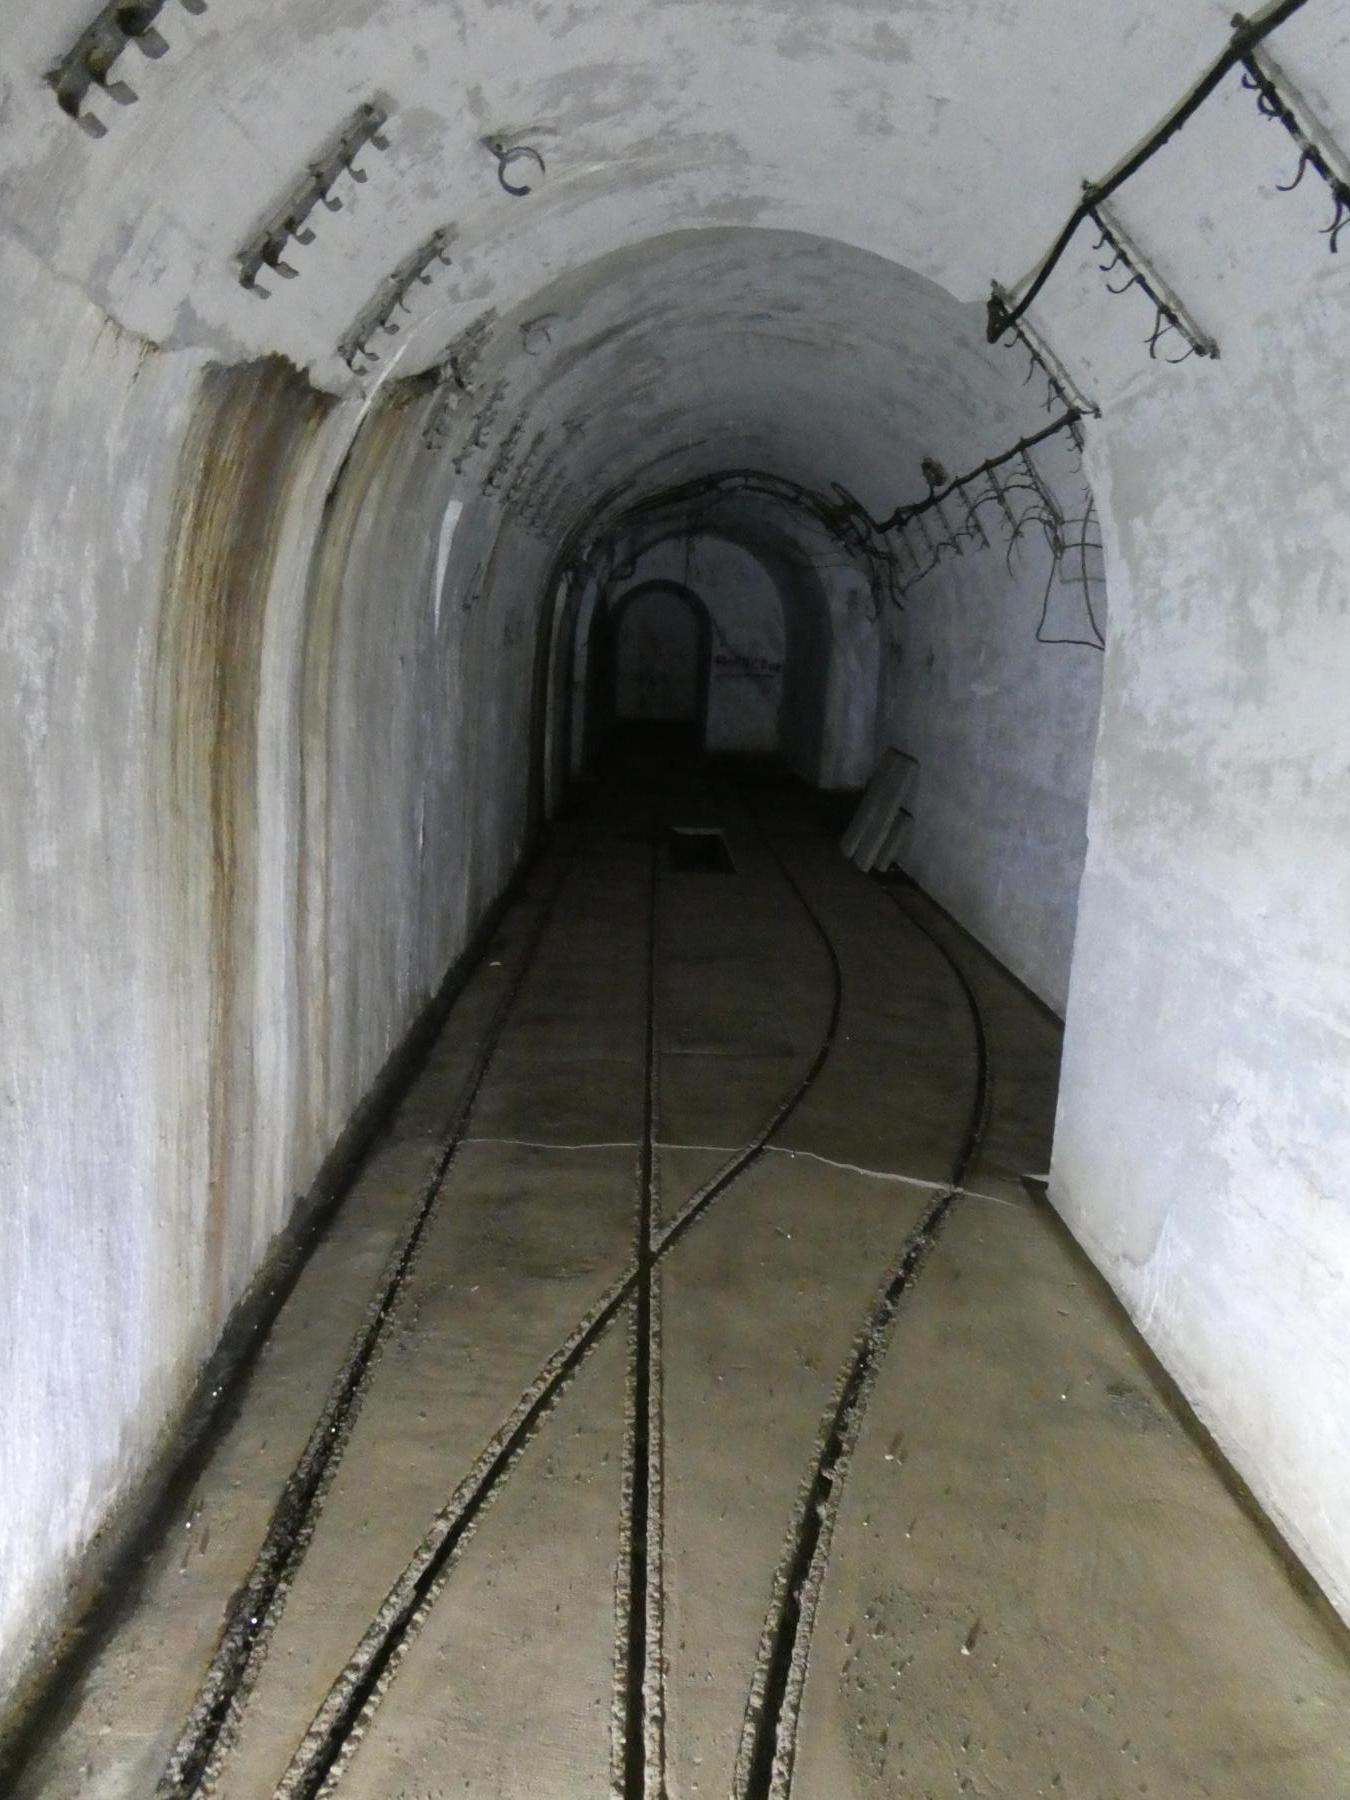 Ligne Maginot - GORDOLON (GN) - (Ouvrage d'artillerie) - Casernement
Galerie de communication vers l'escalier central et l'ascenseur menant à l'étage intermédiaire.